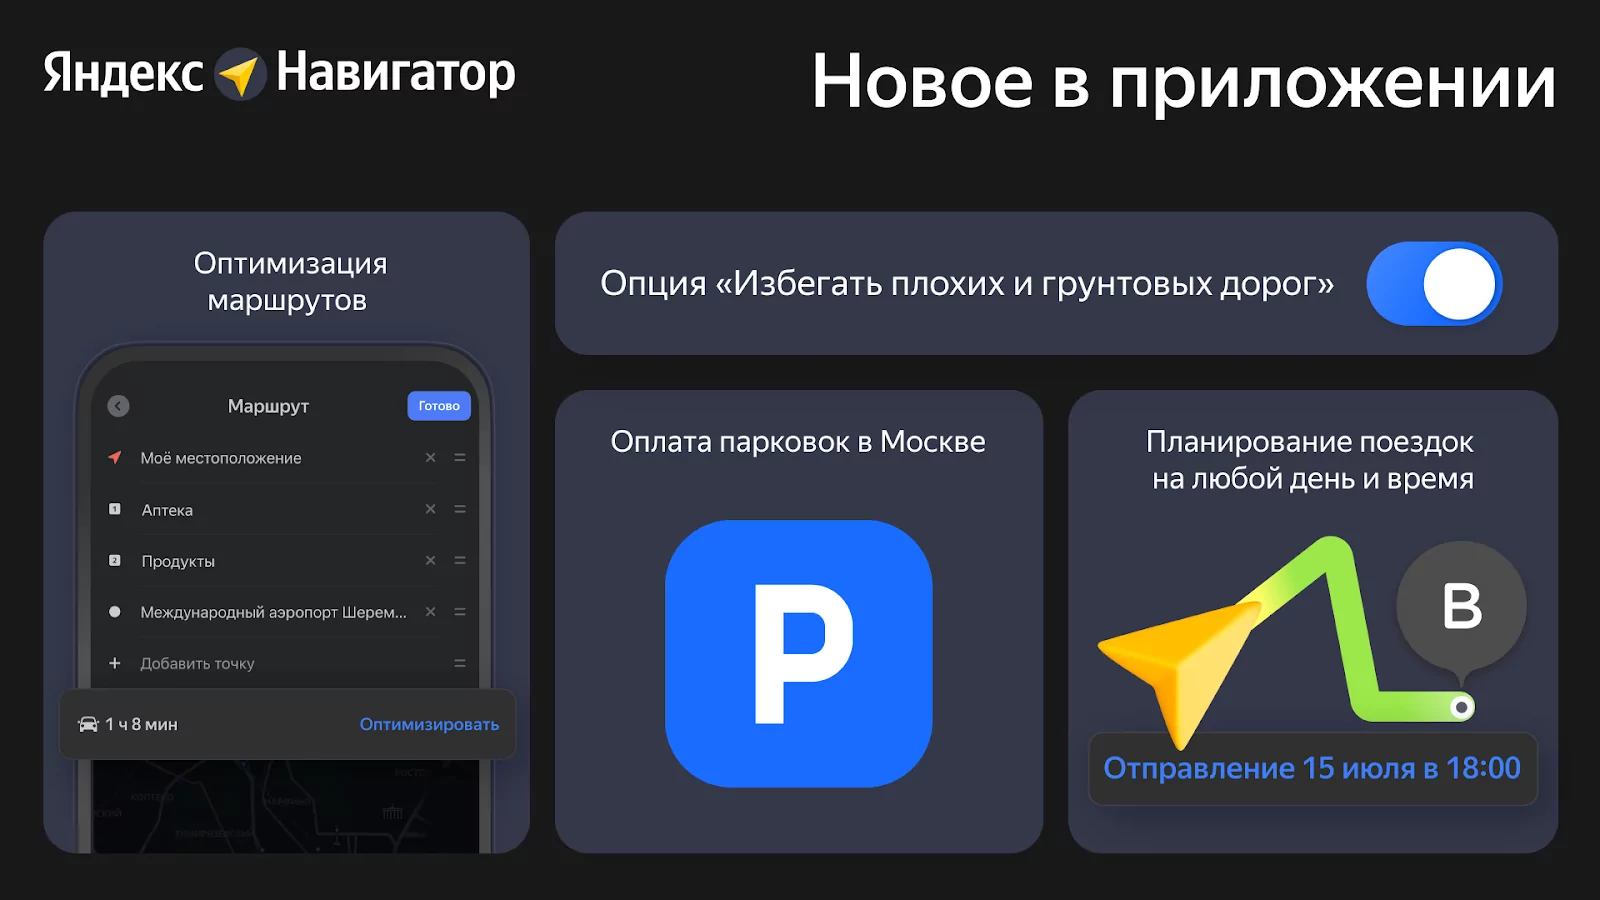 Яндекс Навигатор крупно обновился: полезные виджеты и прогнозирование поездок